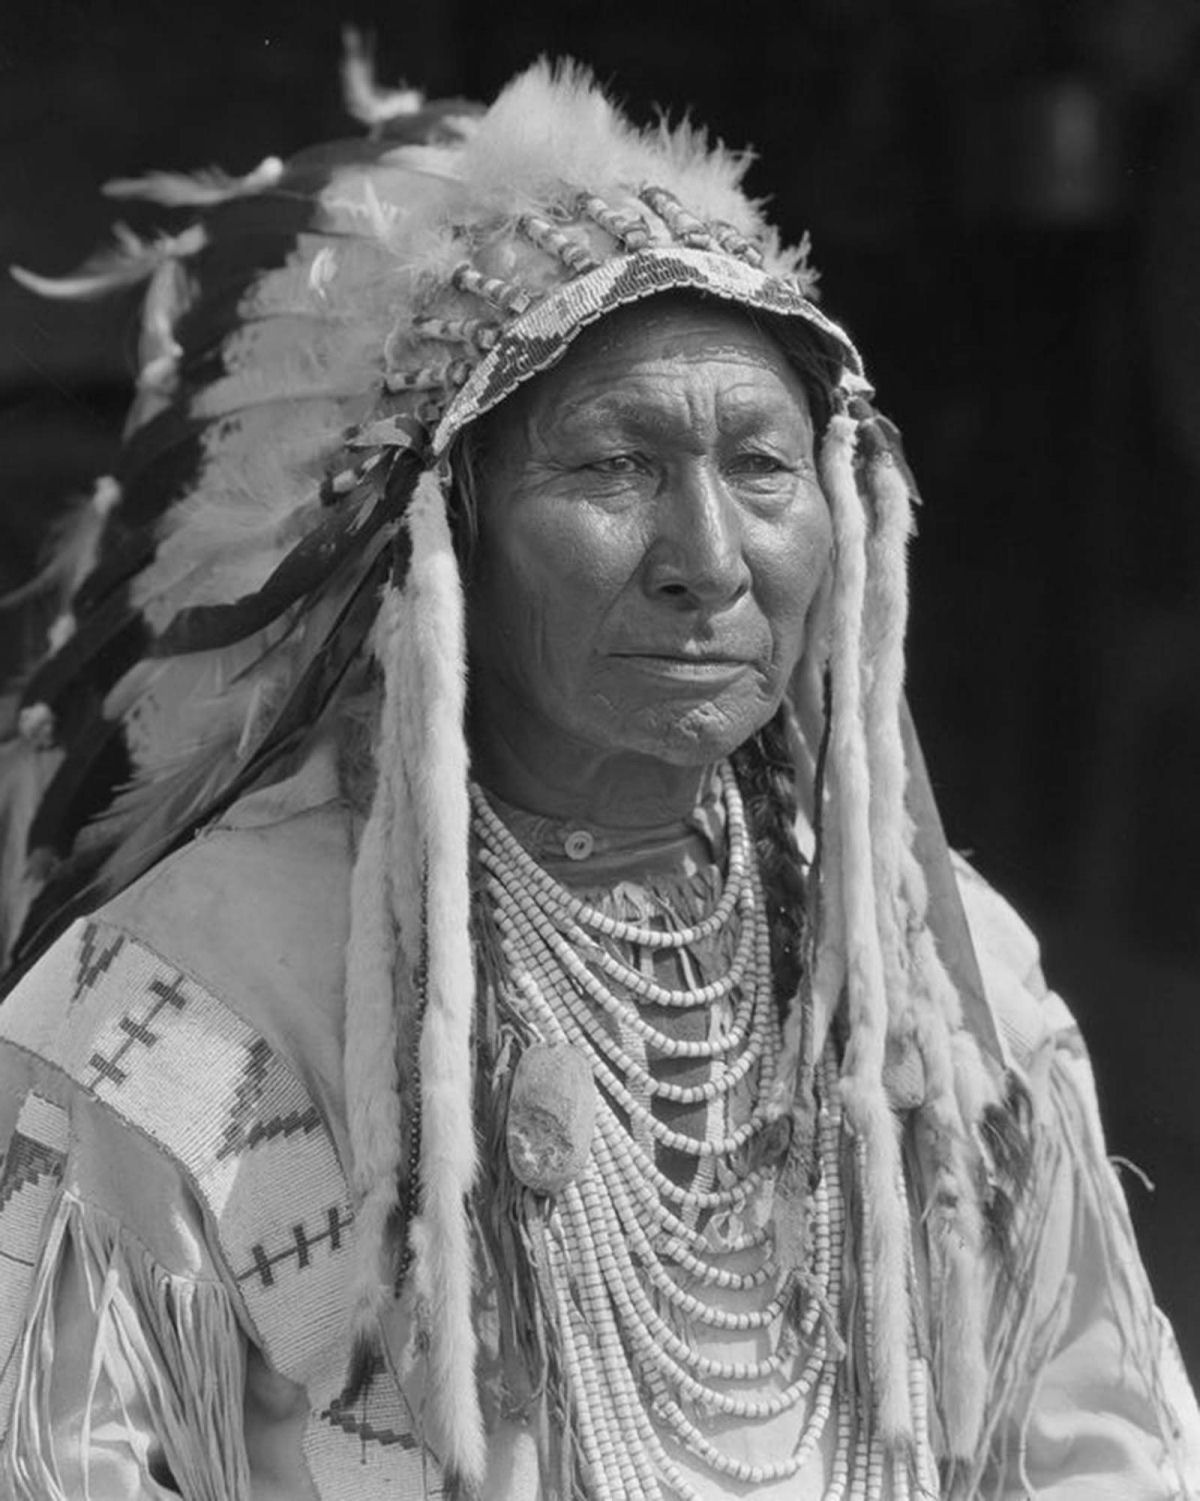 Os nativos das Primeiras Nações do Canadá em fotos históricas raras 05